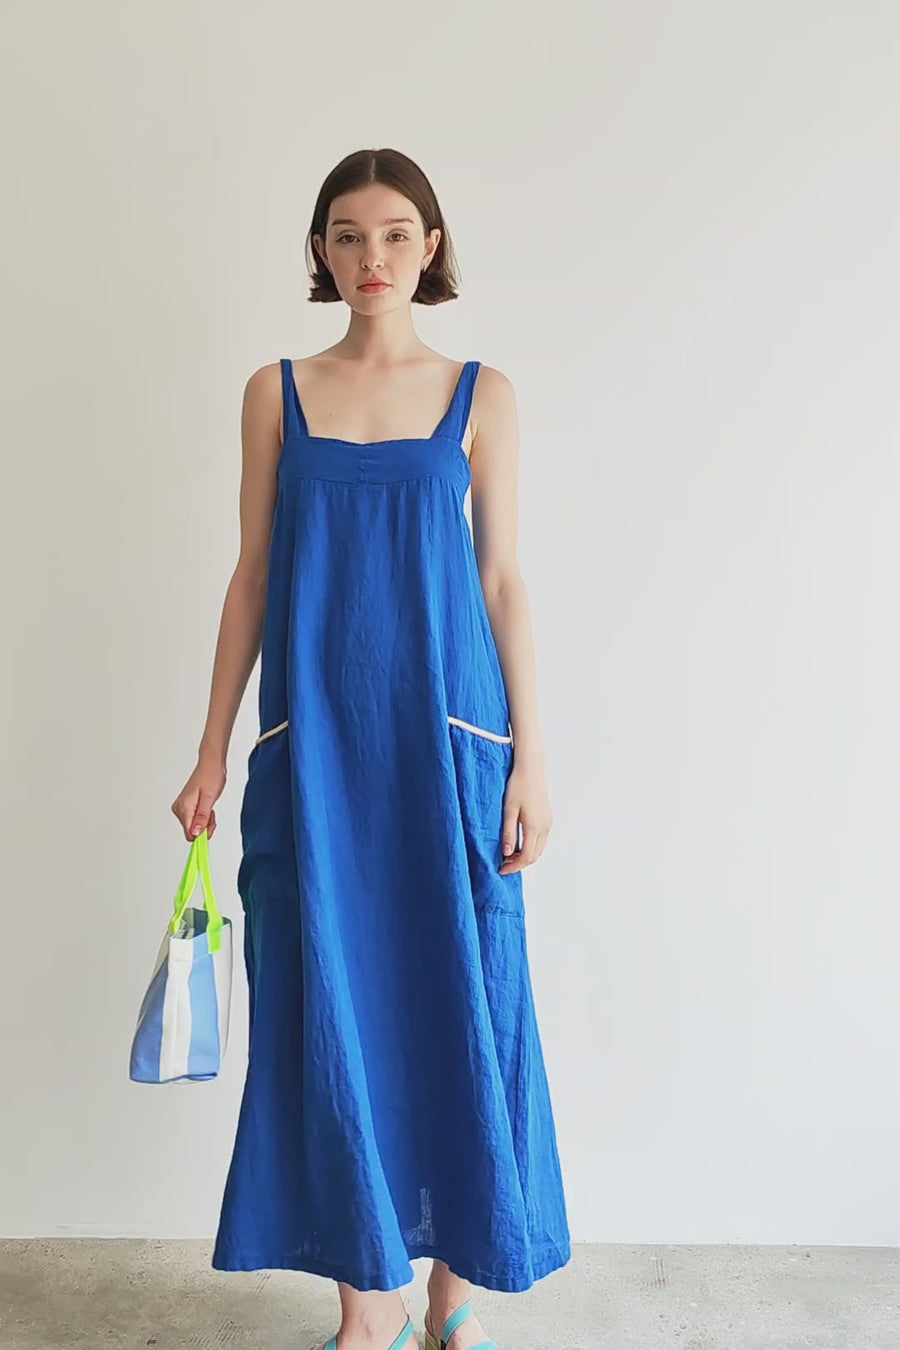 Blue Linen Dress